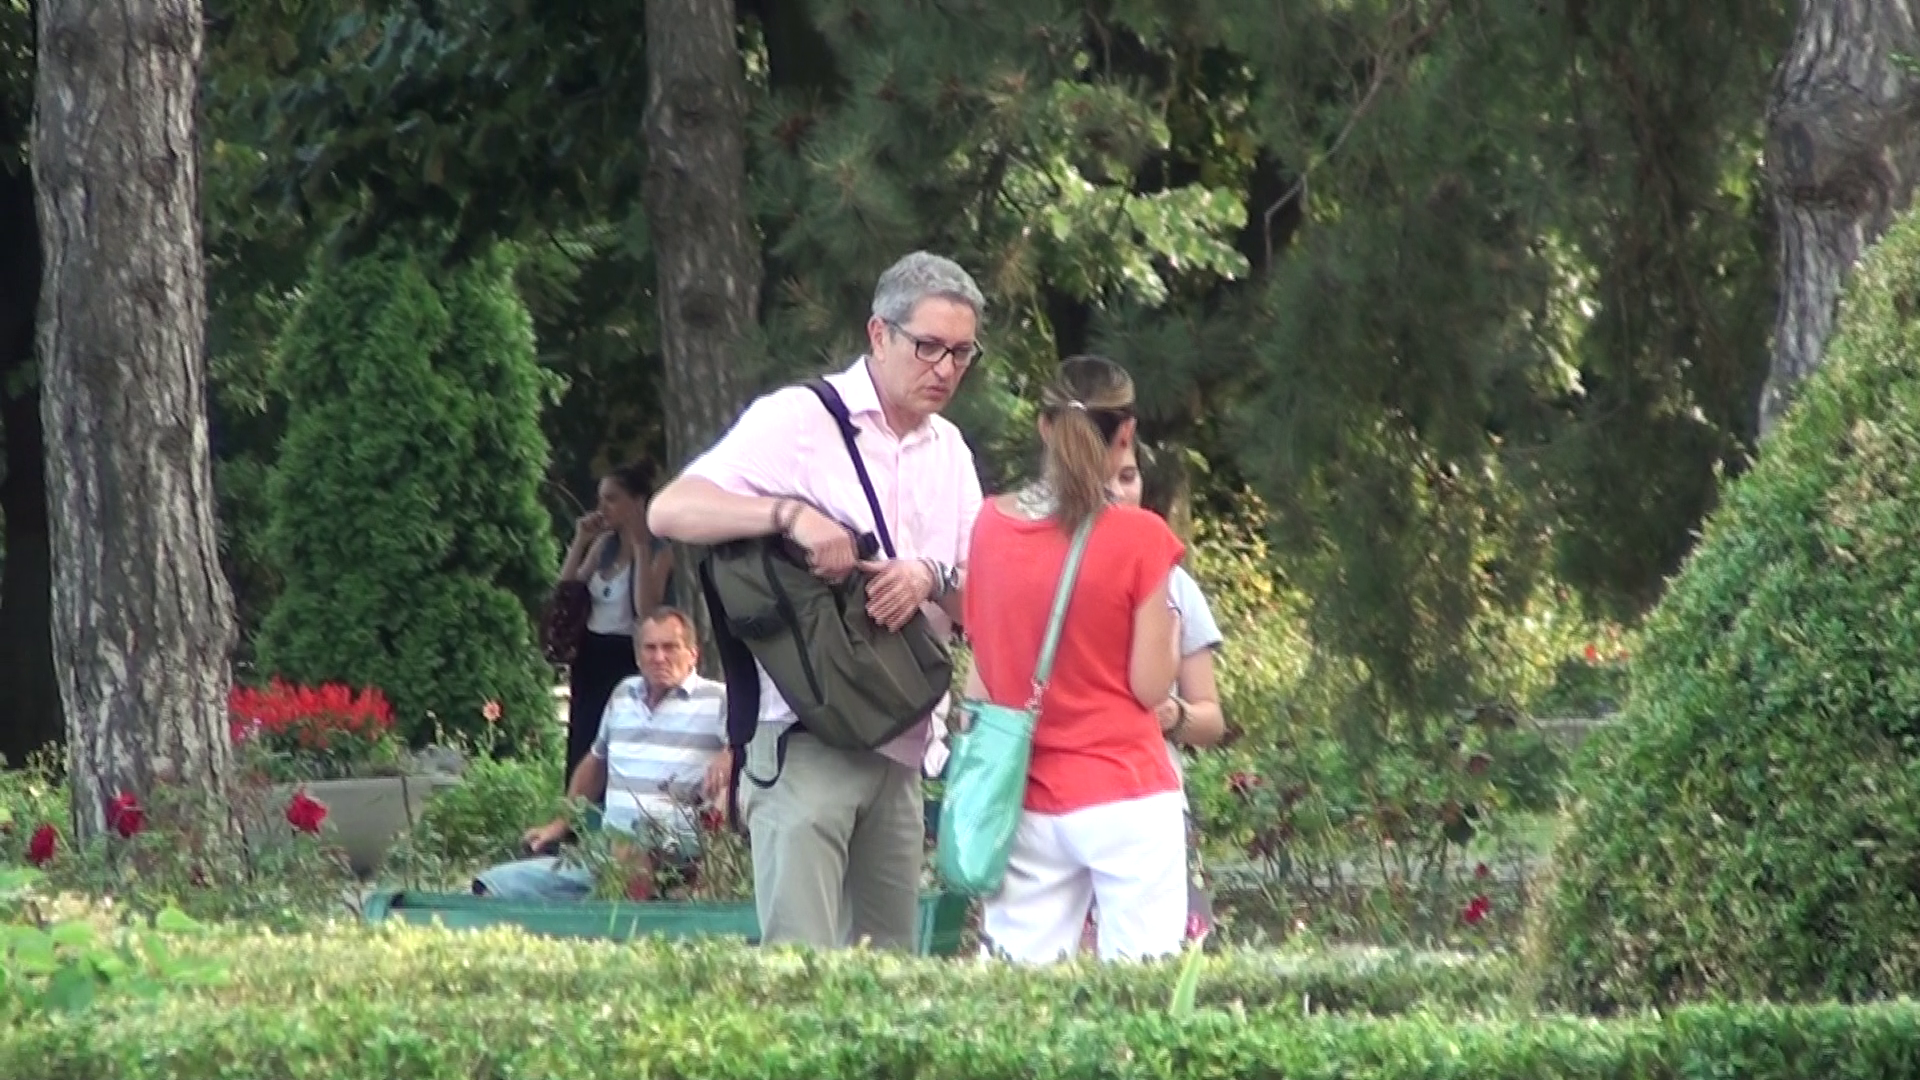 Zaharescu se intalneste cu o mamica in parc